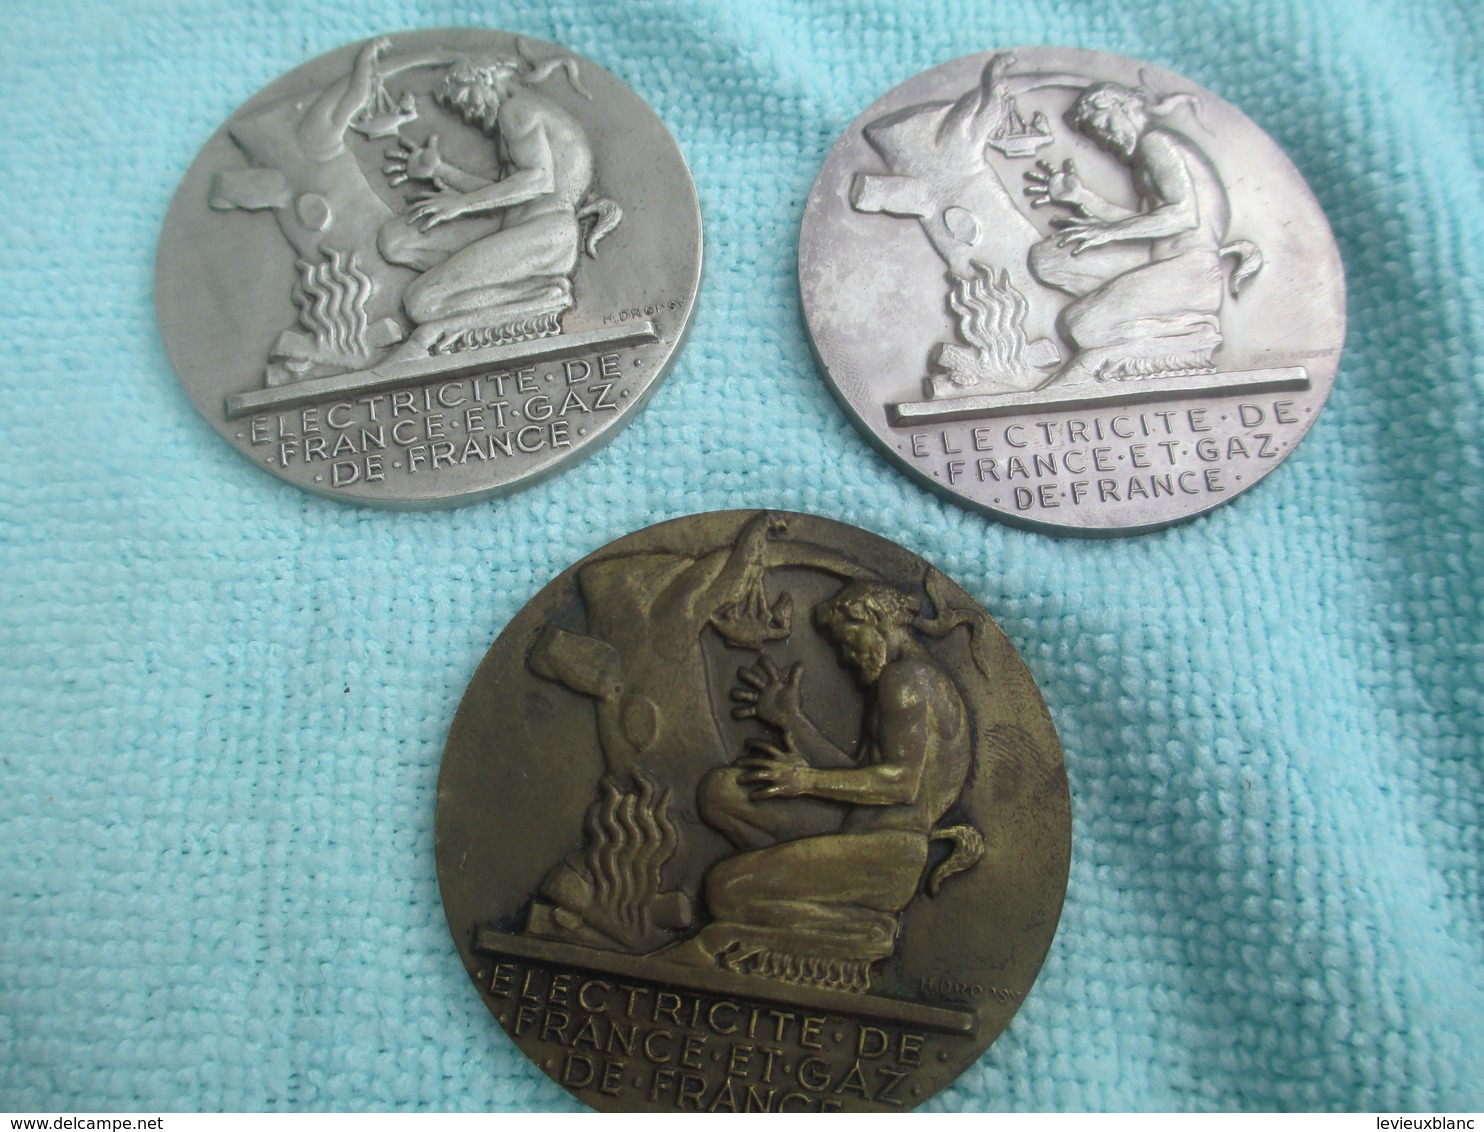 3 médailles Ancienneté/EDF et GDF/20-25-30 années de service/G MARCHAND/ H Dropsy/vers 1950-70                    MED203